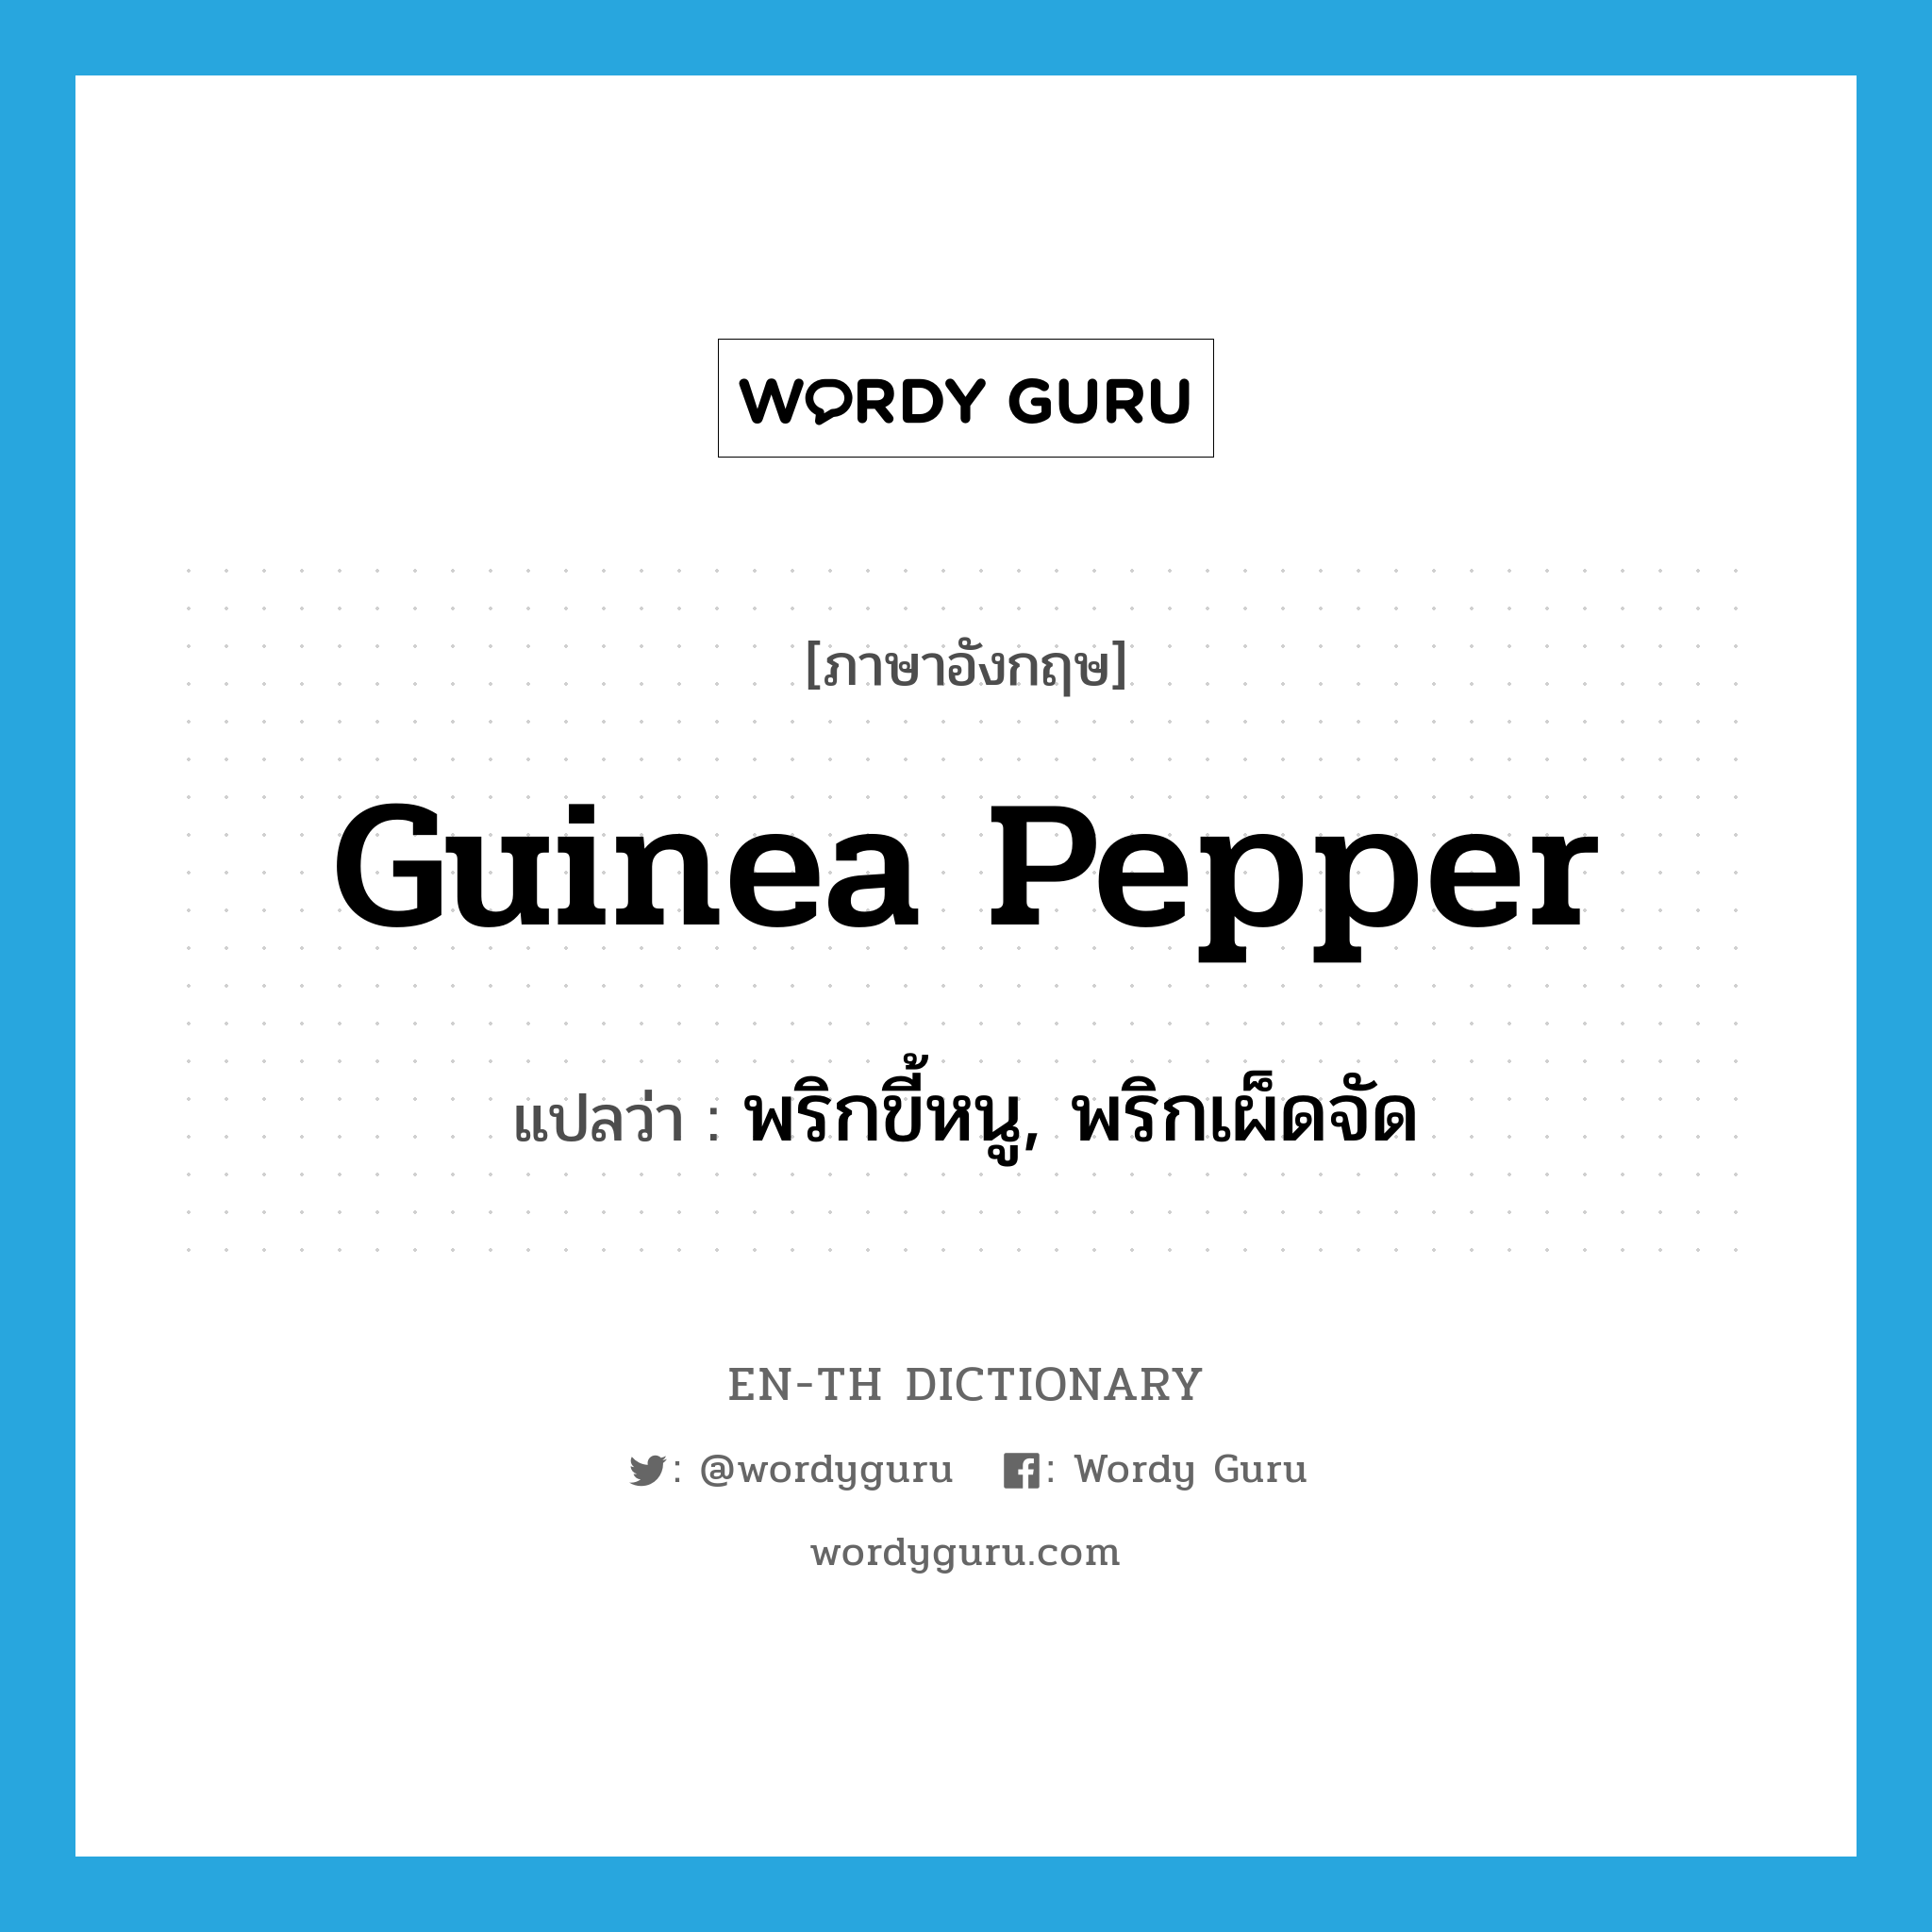 Guinea pepper